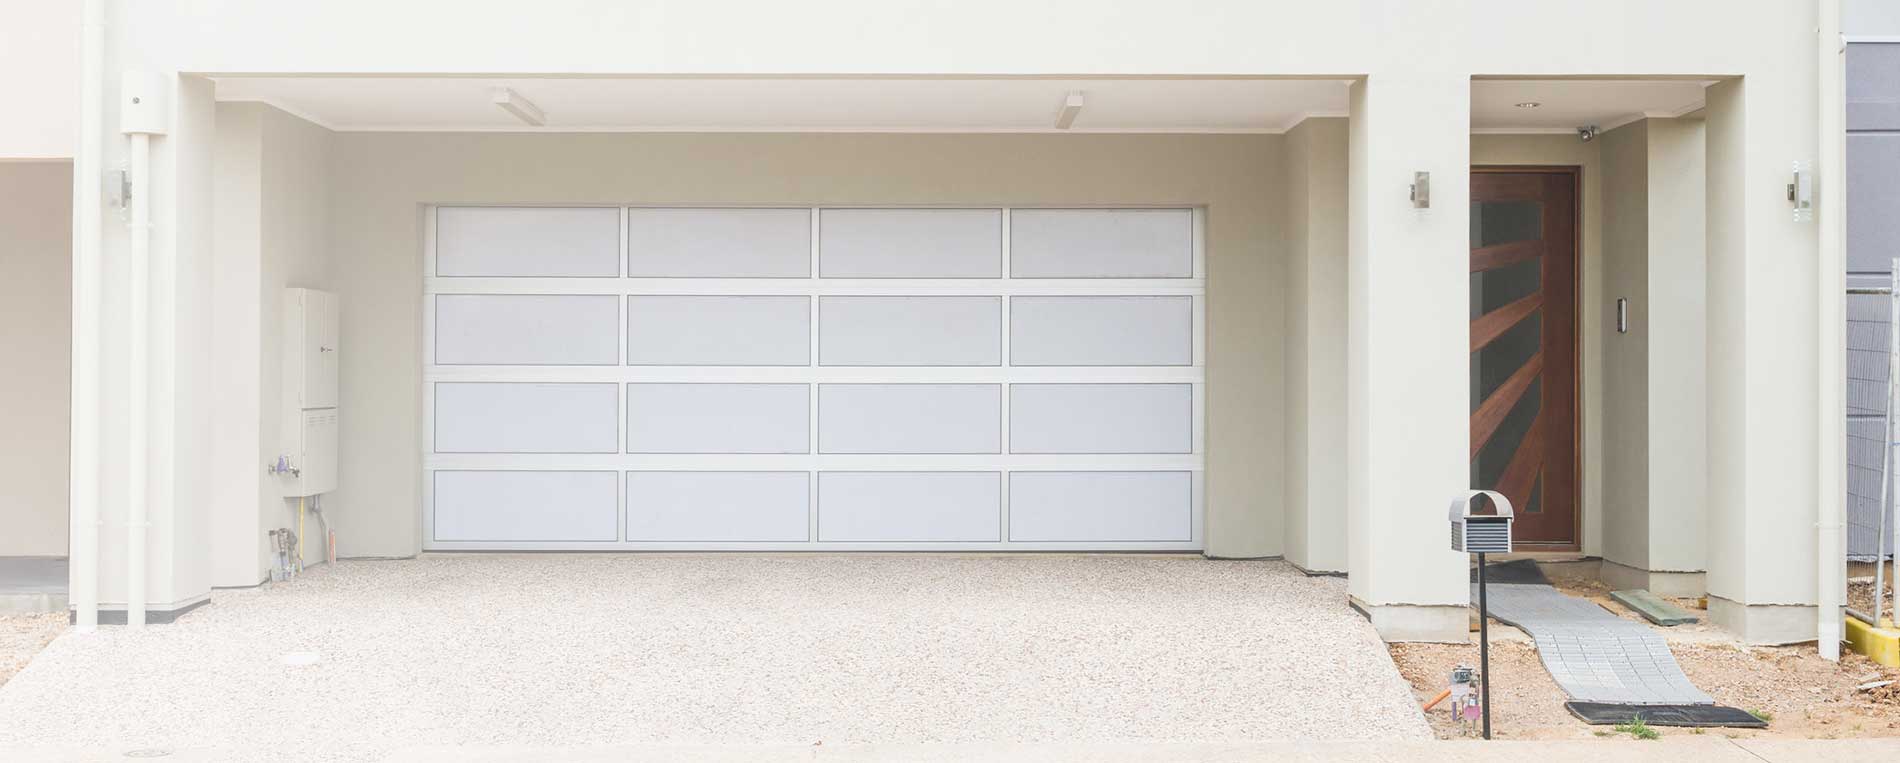 Repair Projects For Garage Door Openers